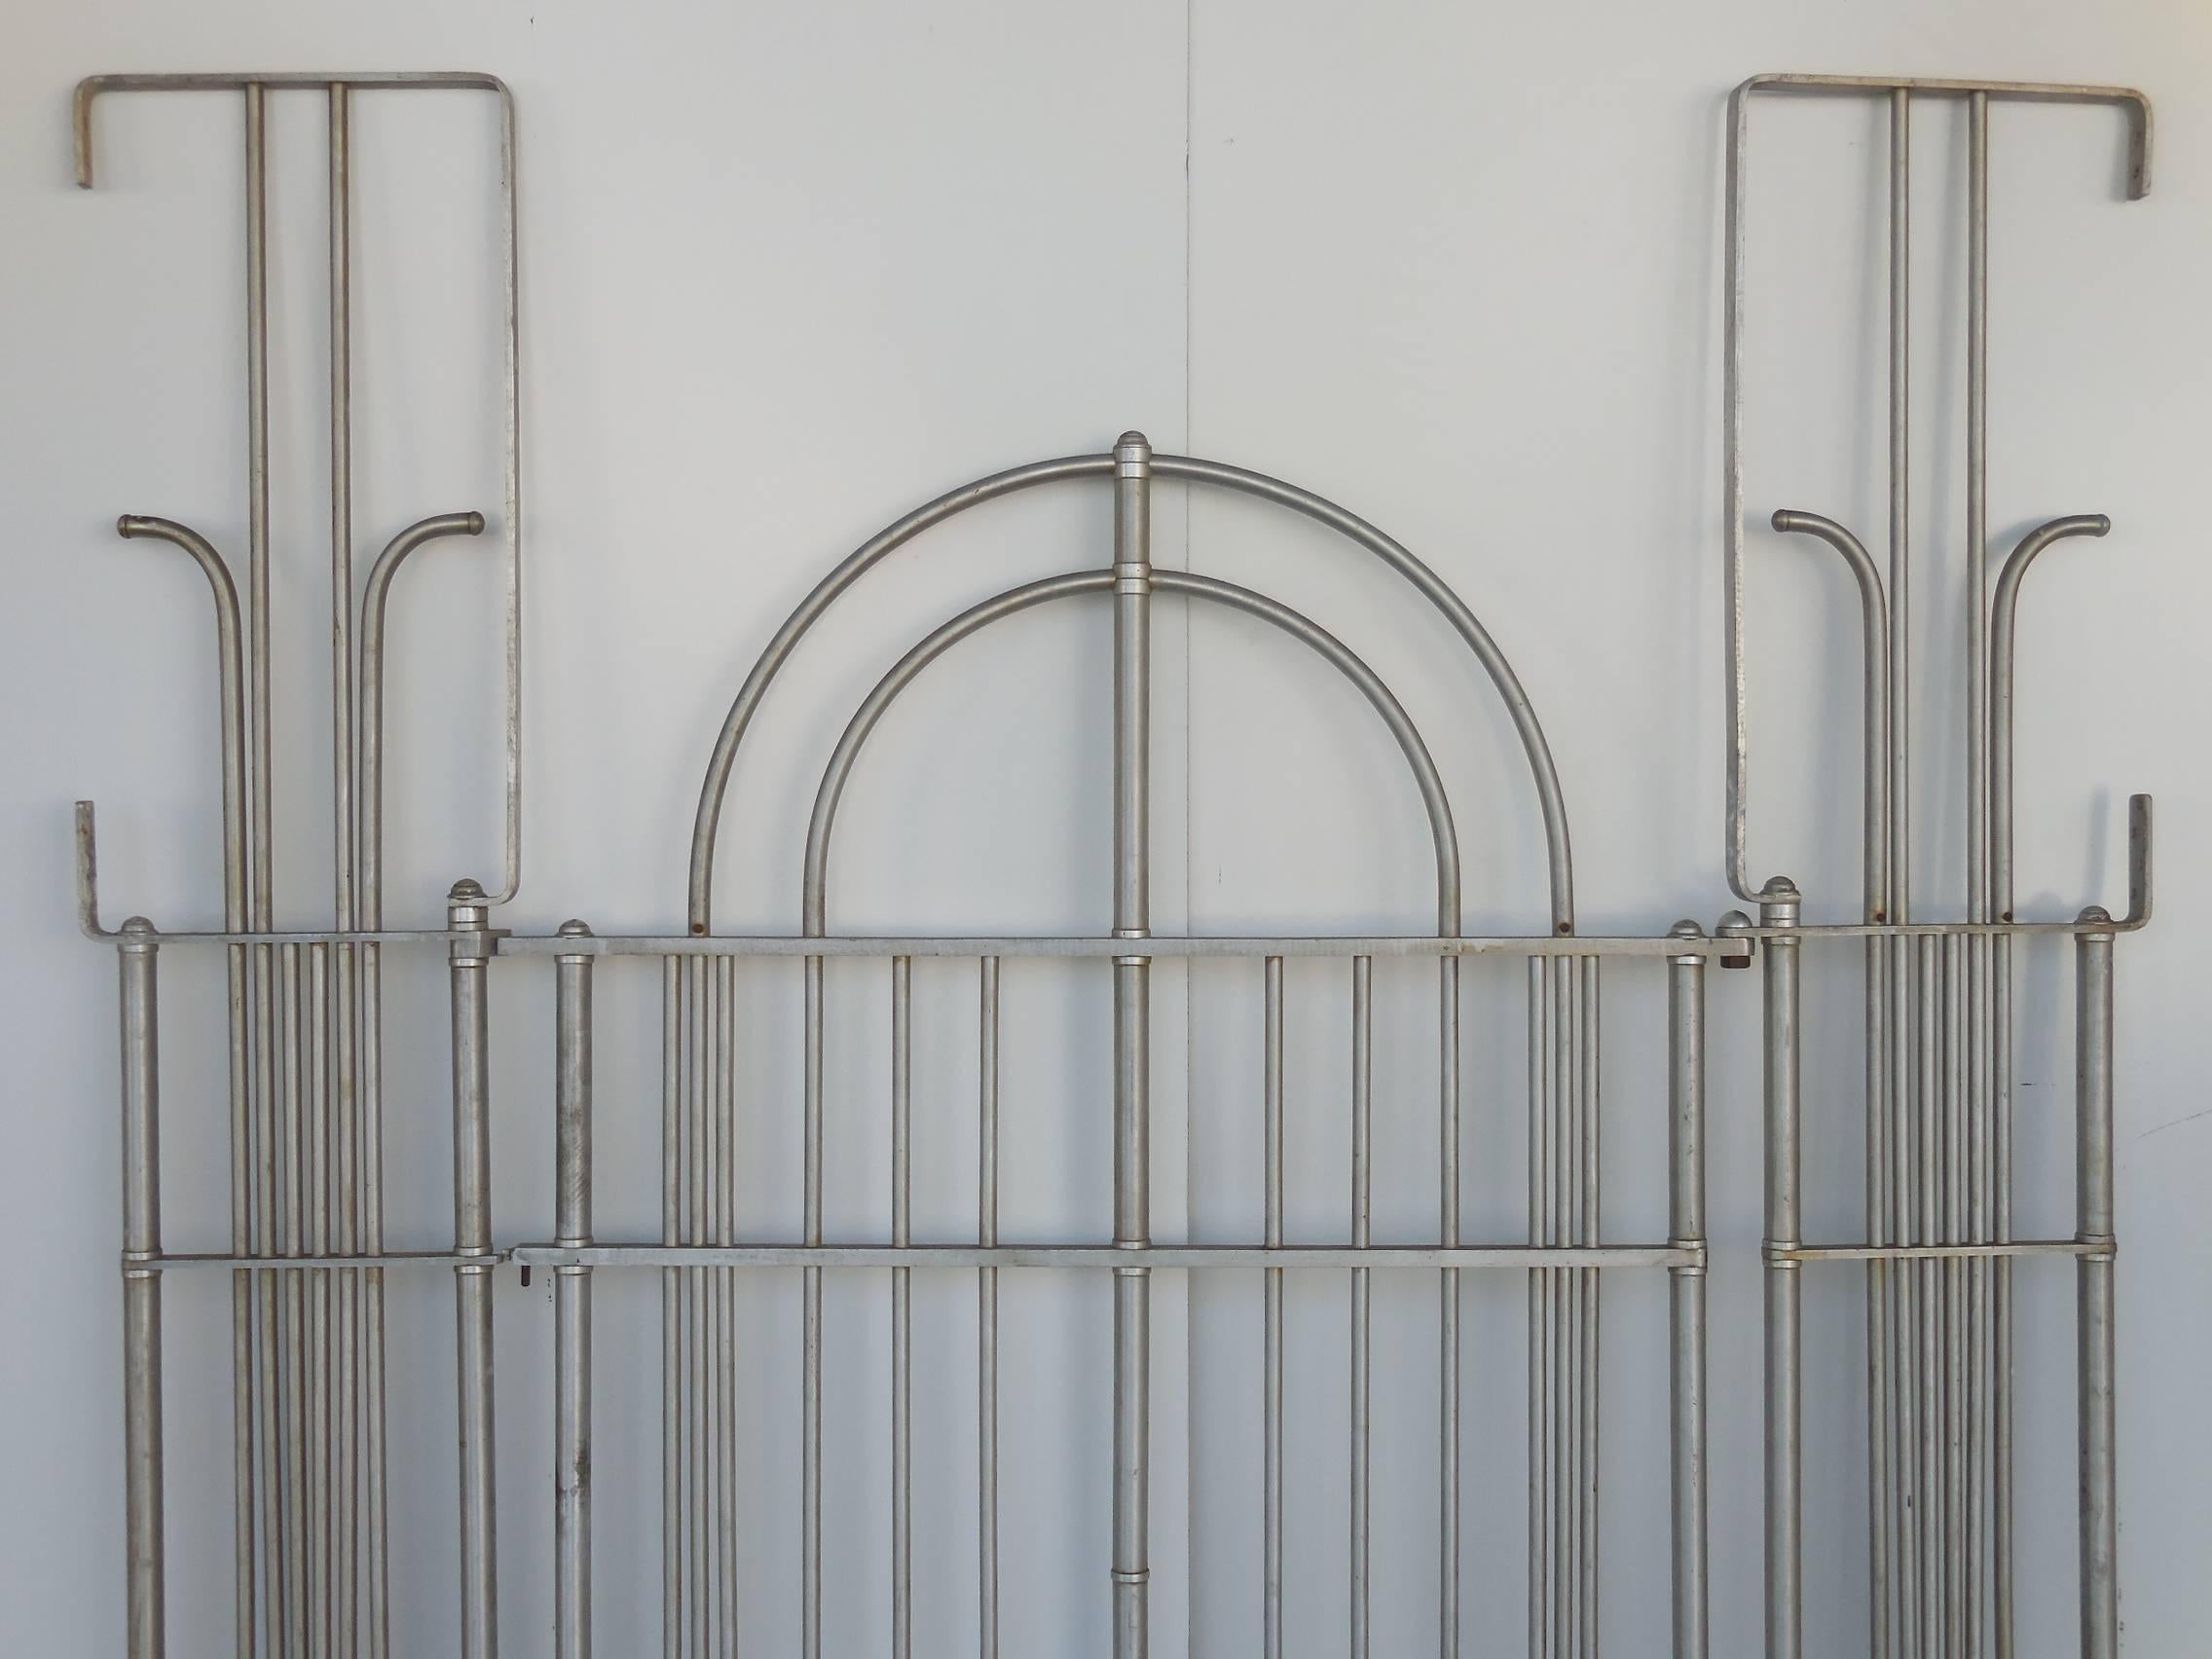 American Art Deco Gate by Warren McArthur